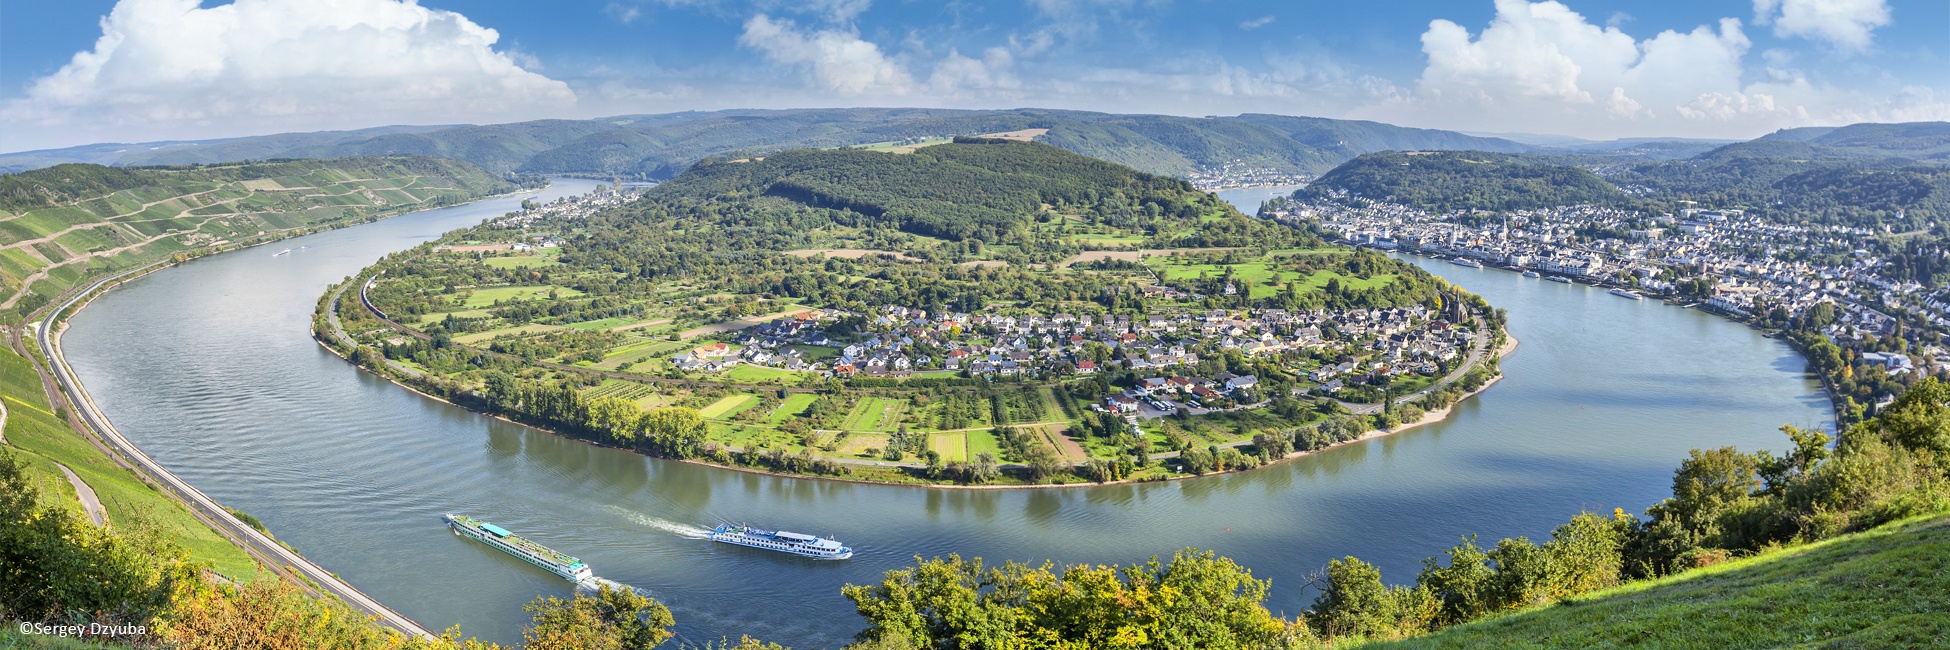 RSB_RANPP - Ruta de los 4 ríos: los valles del Mosela, del Sarre, del romántico Rin y del Neckar